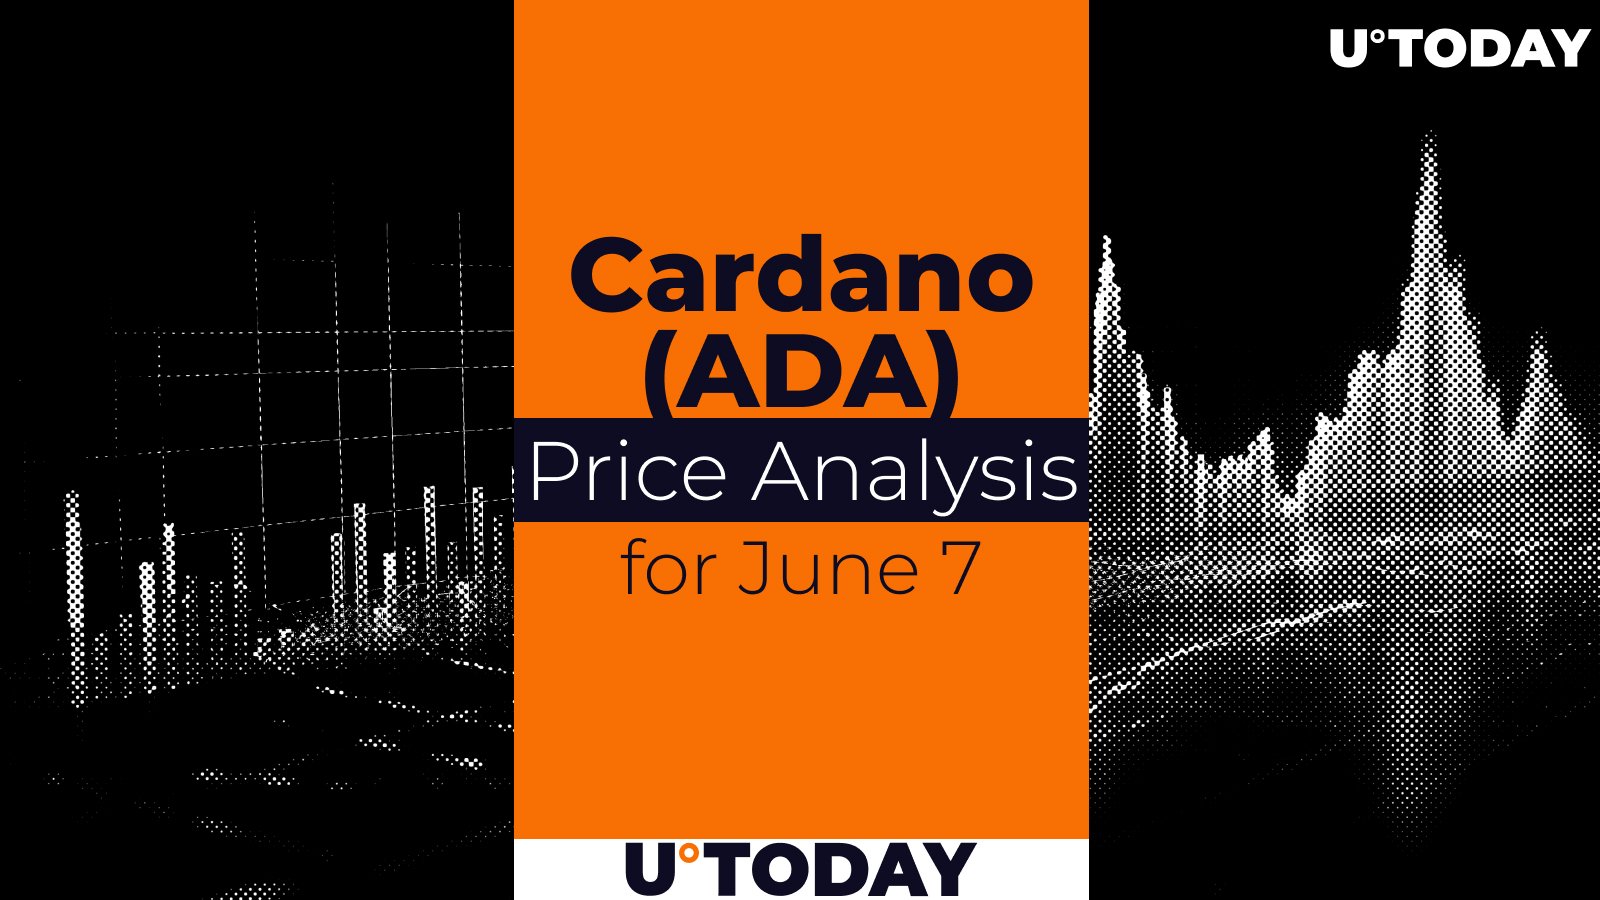 Cardano (ADA) Price Prediction for June 7